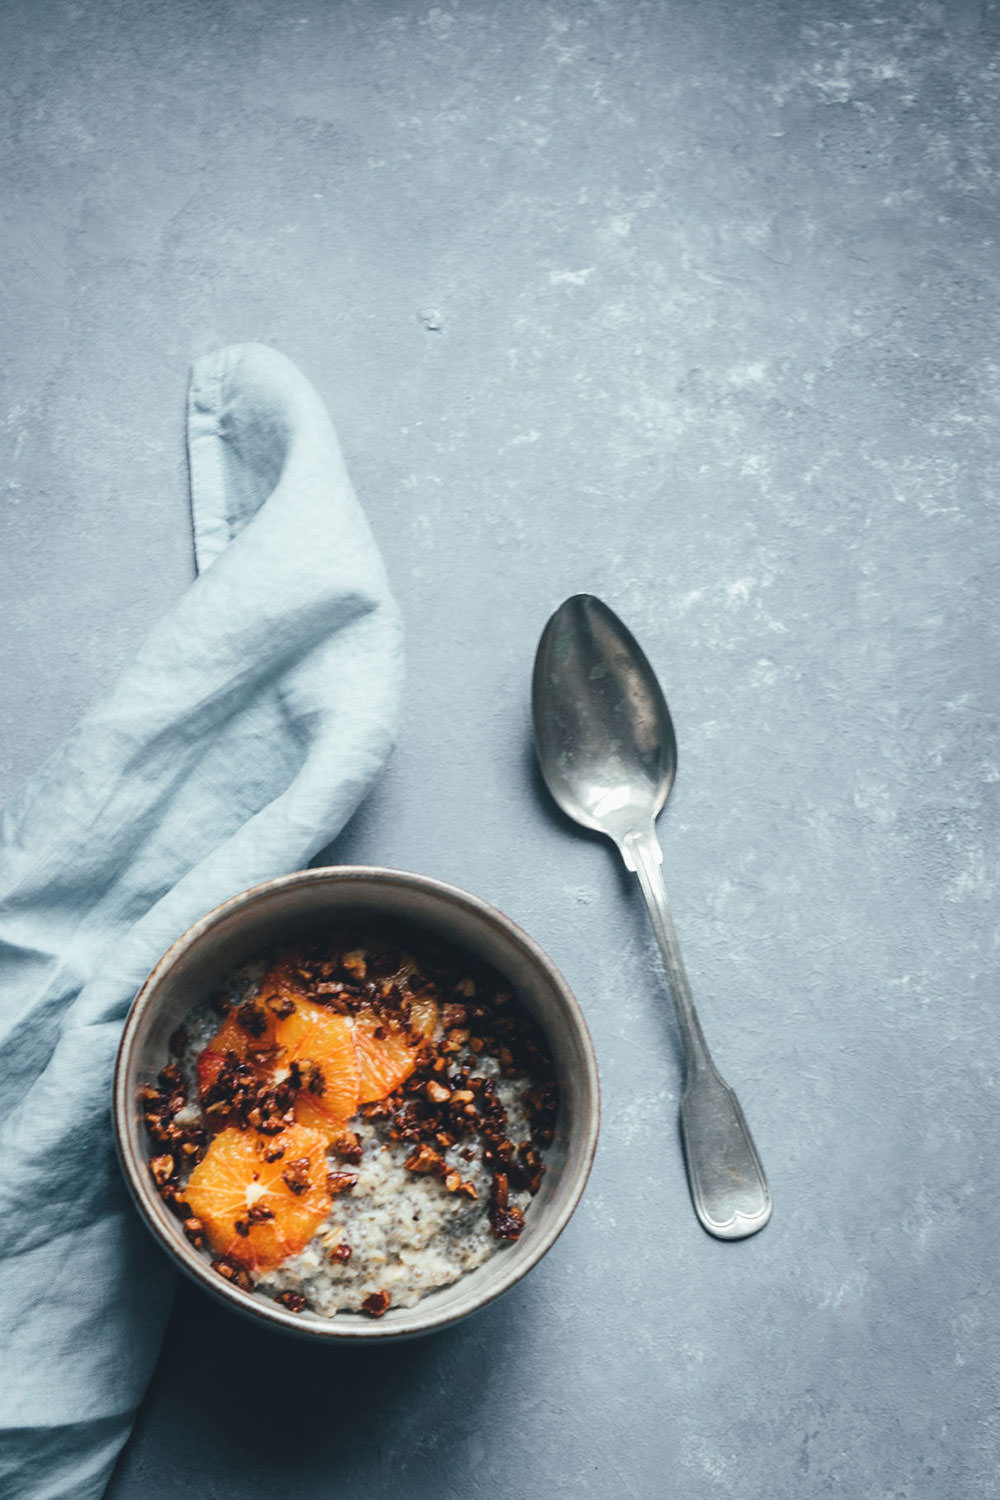 Rezept für cremiges Chia-Porridge mit Pekannuss-Zimt-Crunch und Blutorangen | vegan und lecker | moeyskitchen.com #porridge #chiaporridge #vegan #frühstück #breakfast #chia #haferflocken #hafermilch #pflanzenmilch #foodblogger #foodblog #rezepte #rezept